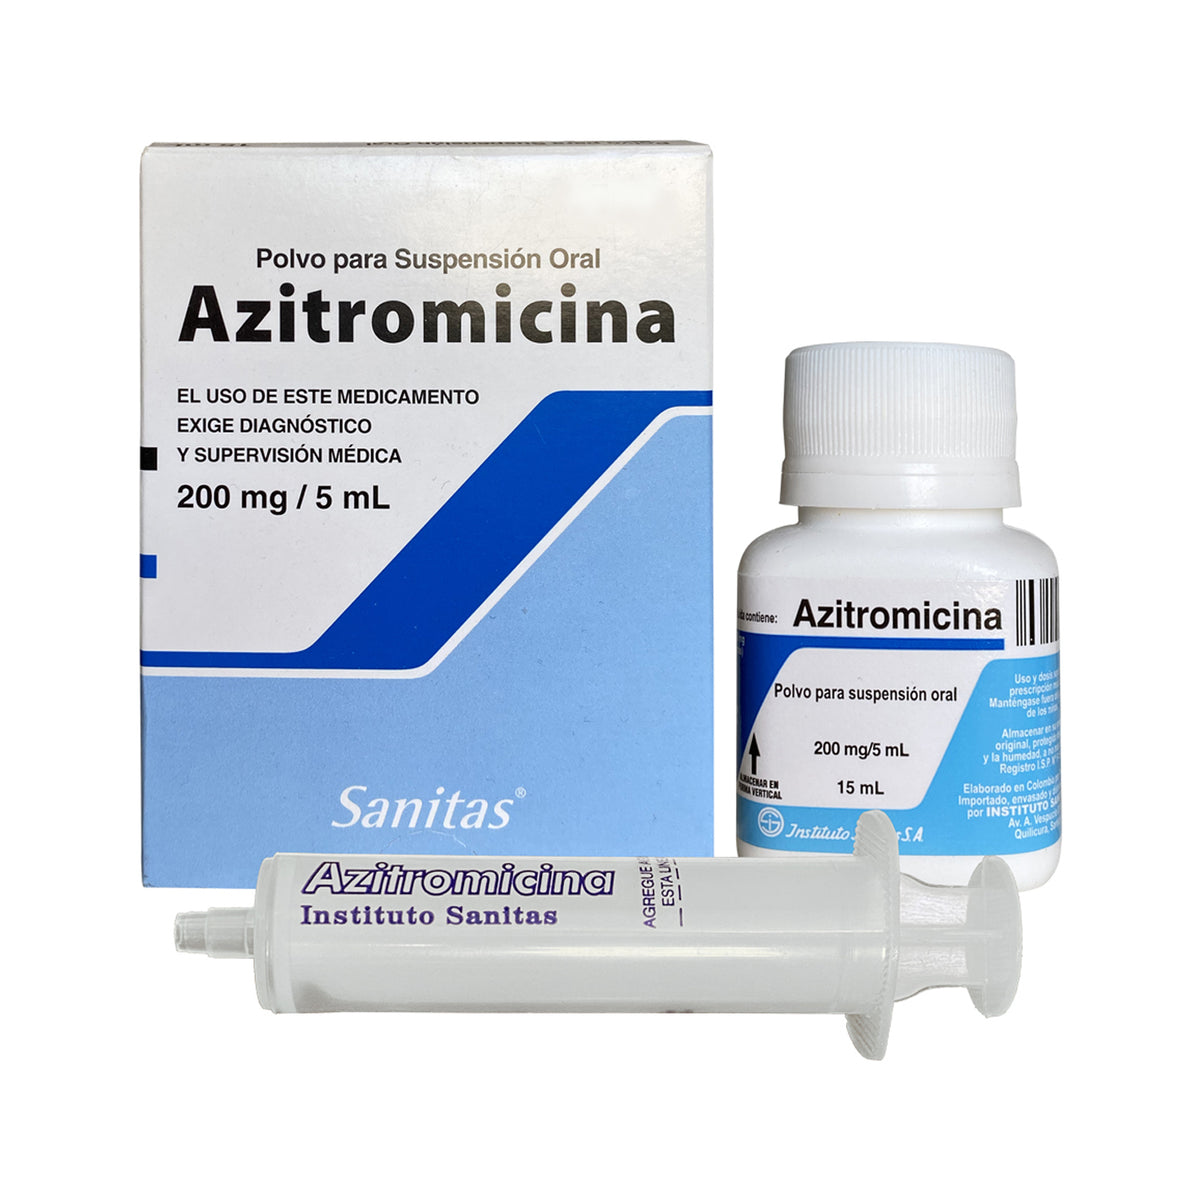 Azitromicina Polvo para Suspensión Oral 200mg/5ml